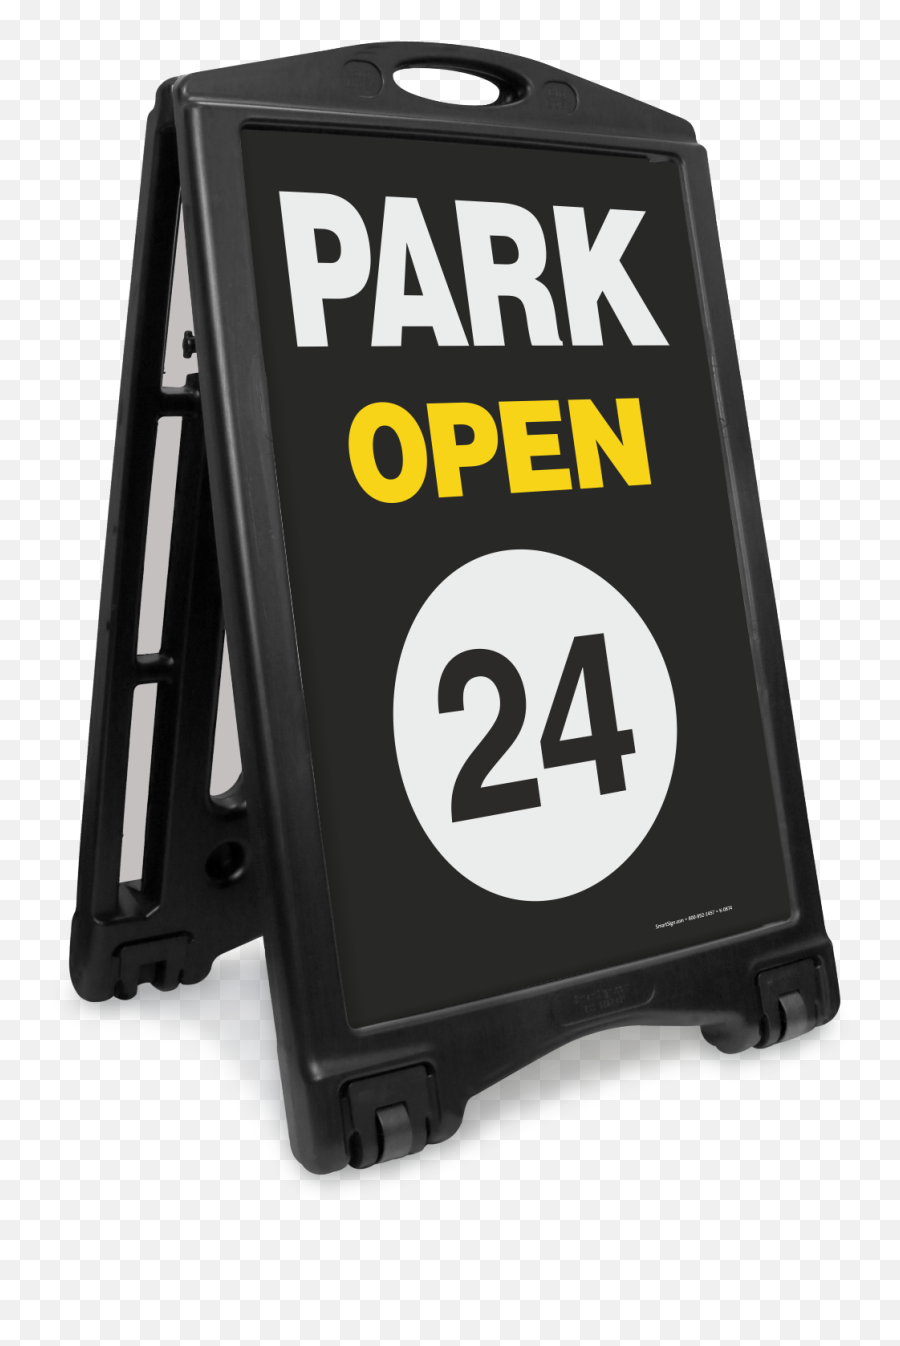 Park Open 24 Portable A - Frame Sidewalk Sign Sku Kroll1079 Geng 24 Png,Open Sign Png